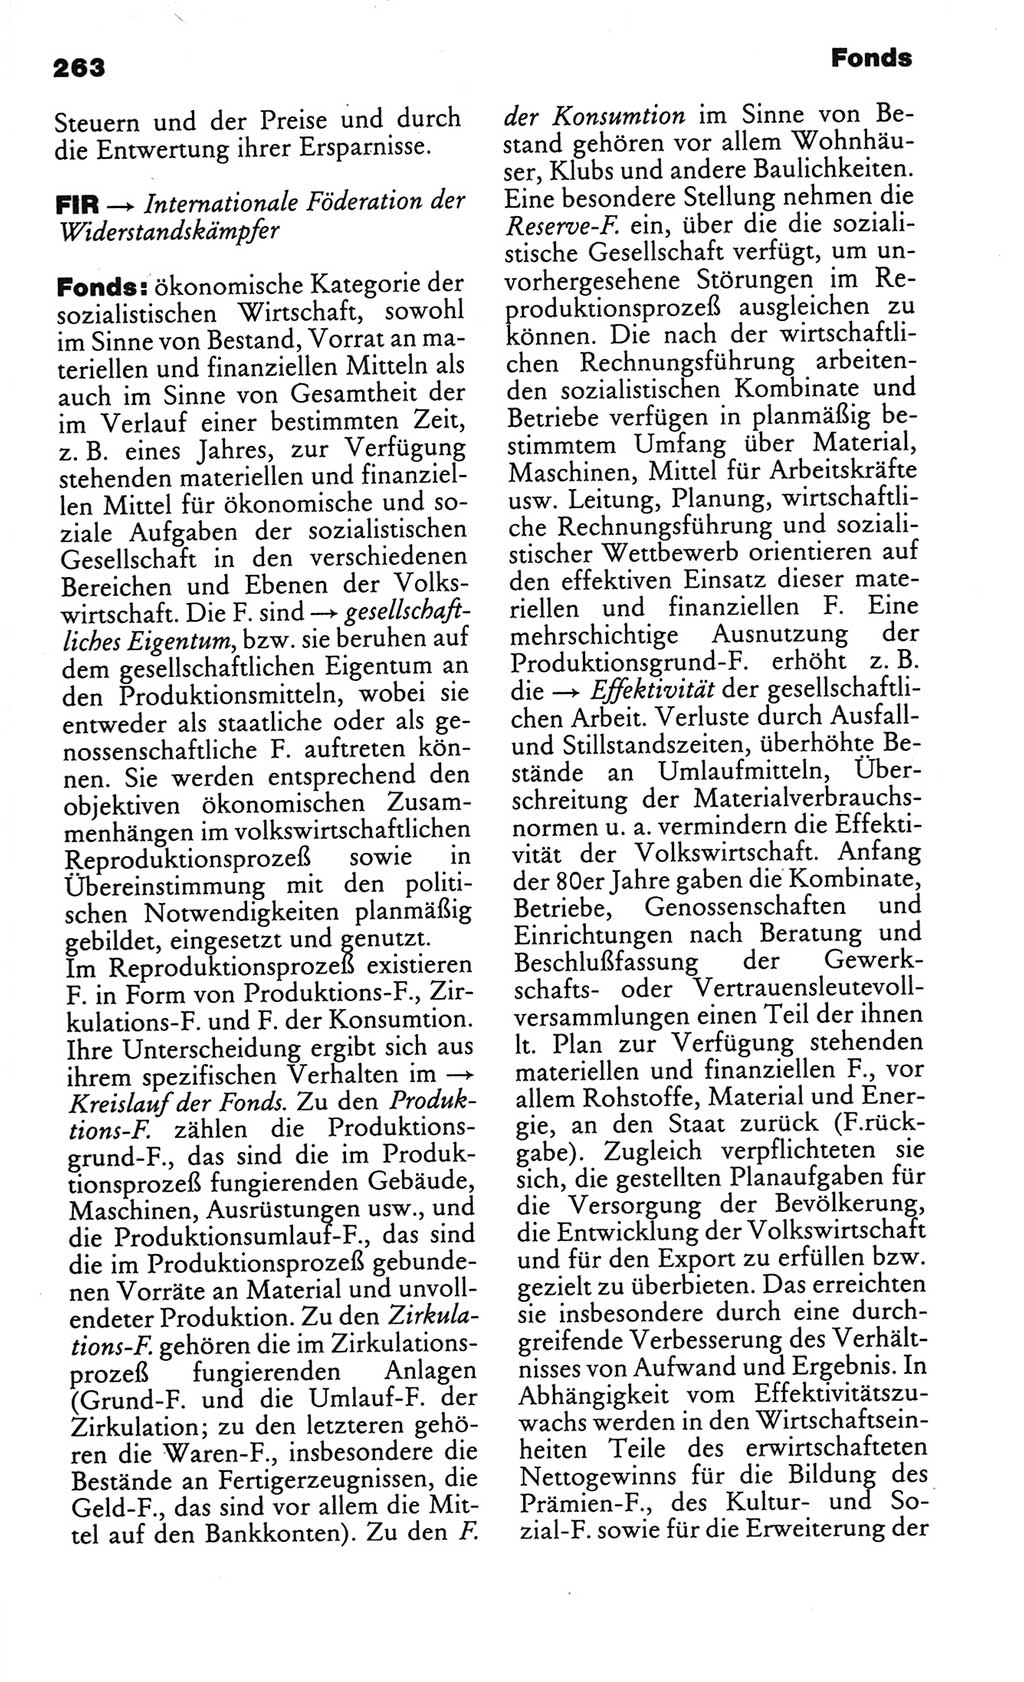 Kleines politisches Wörterbuch [Deutsche Demokratische Republik (DDR)] 1986, Seite 263 (Kl. pol. Wb. DDR 1986, S. 263)